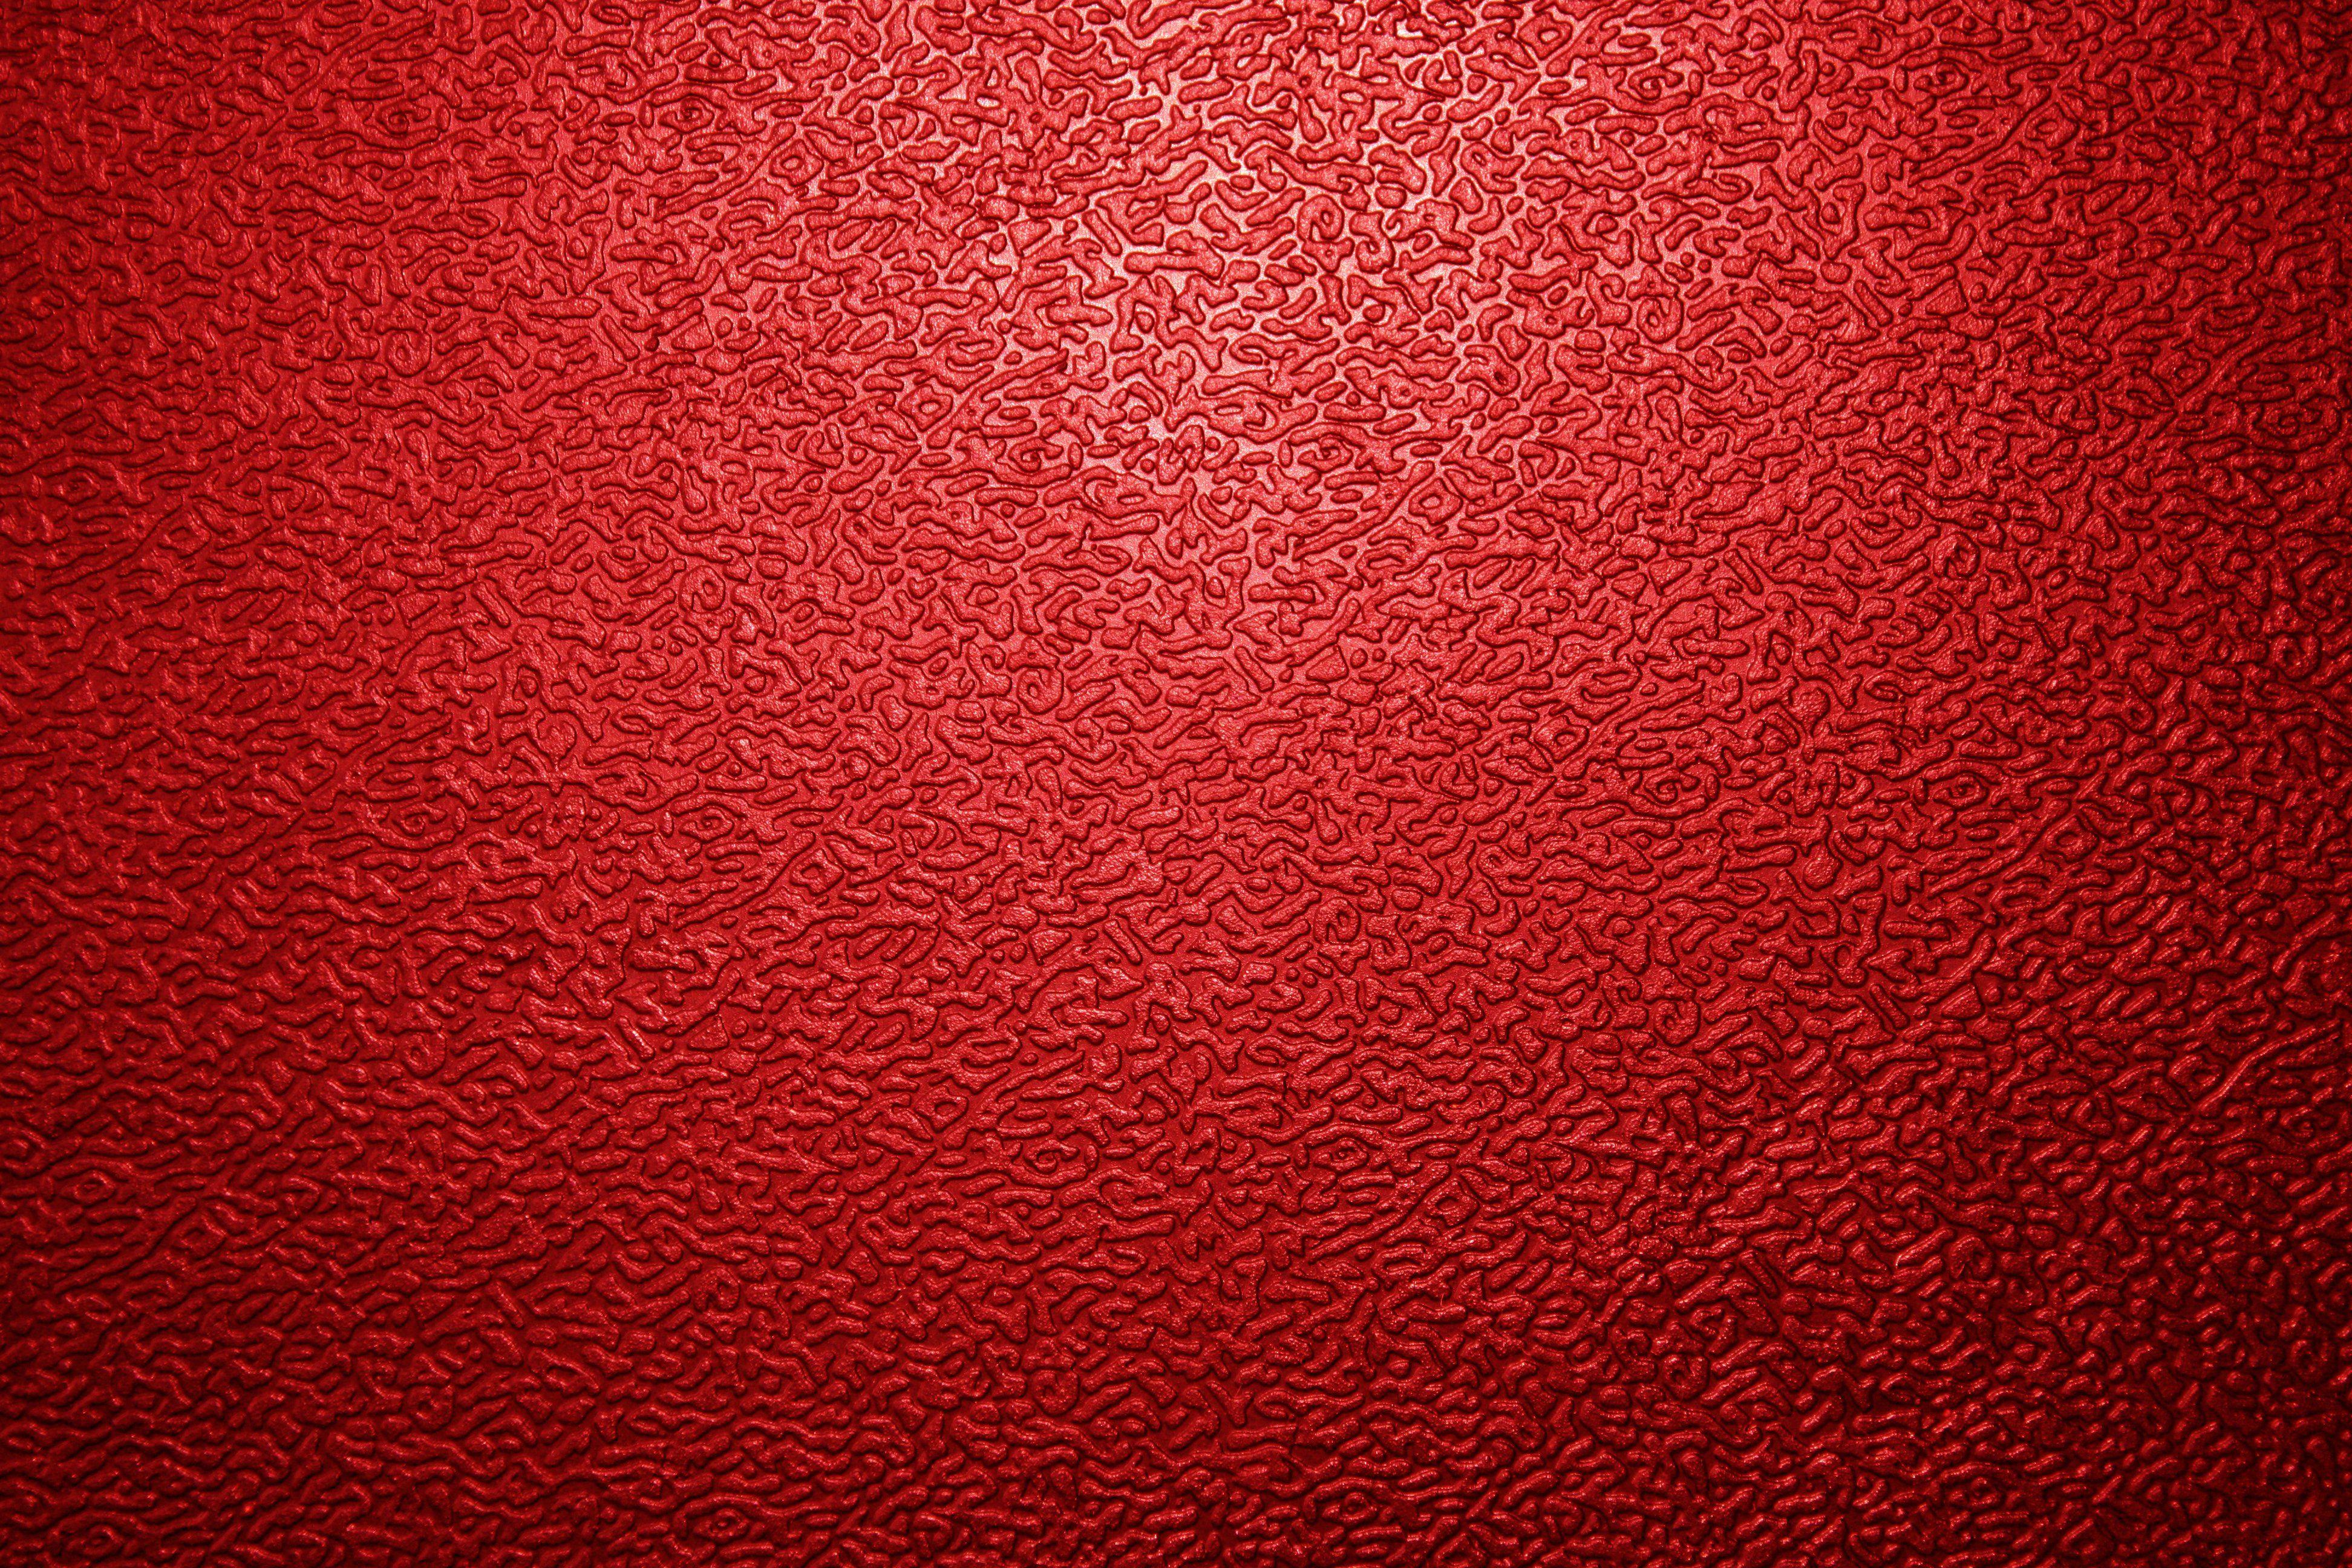 Nếu bạn đang tìm kiếm một ảnh nền độc đáo giúp cho chiếc điện thoại của mình trở nên khác biệt hơn, hãy xem ngay ảnh nền kim loại đỏ này. Với sự phối hợp hài hoà giữa màu đỏ và kim loại, bức ảnh này chắc chắn sẽ khiến bạn thích thú.